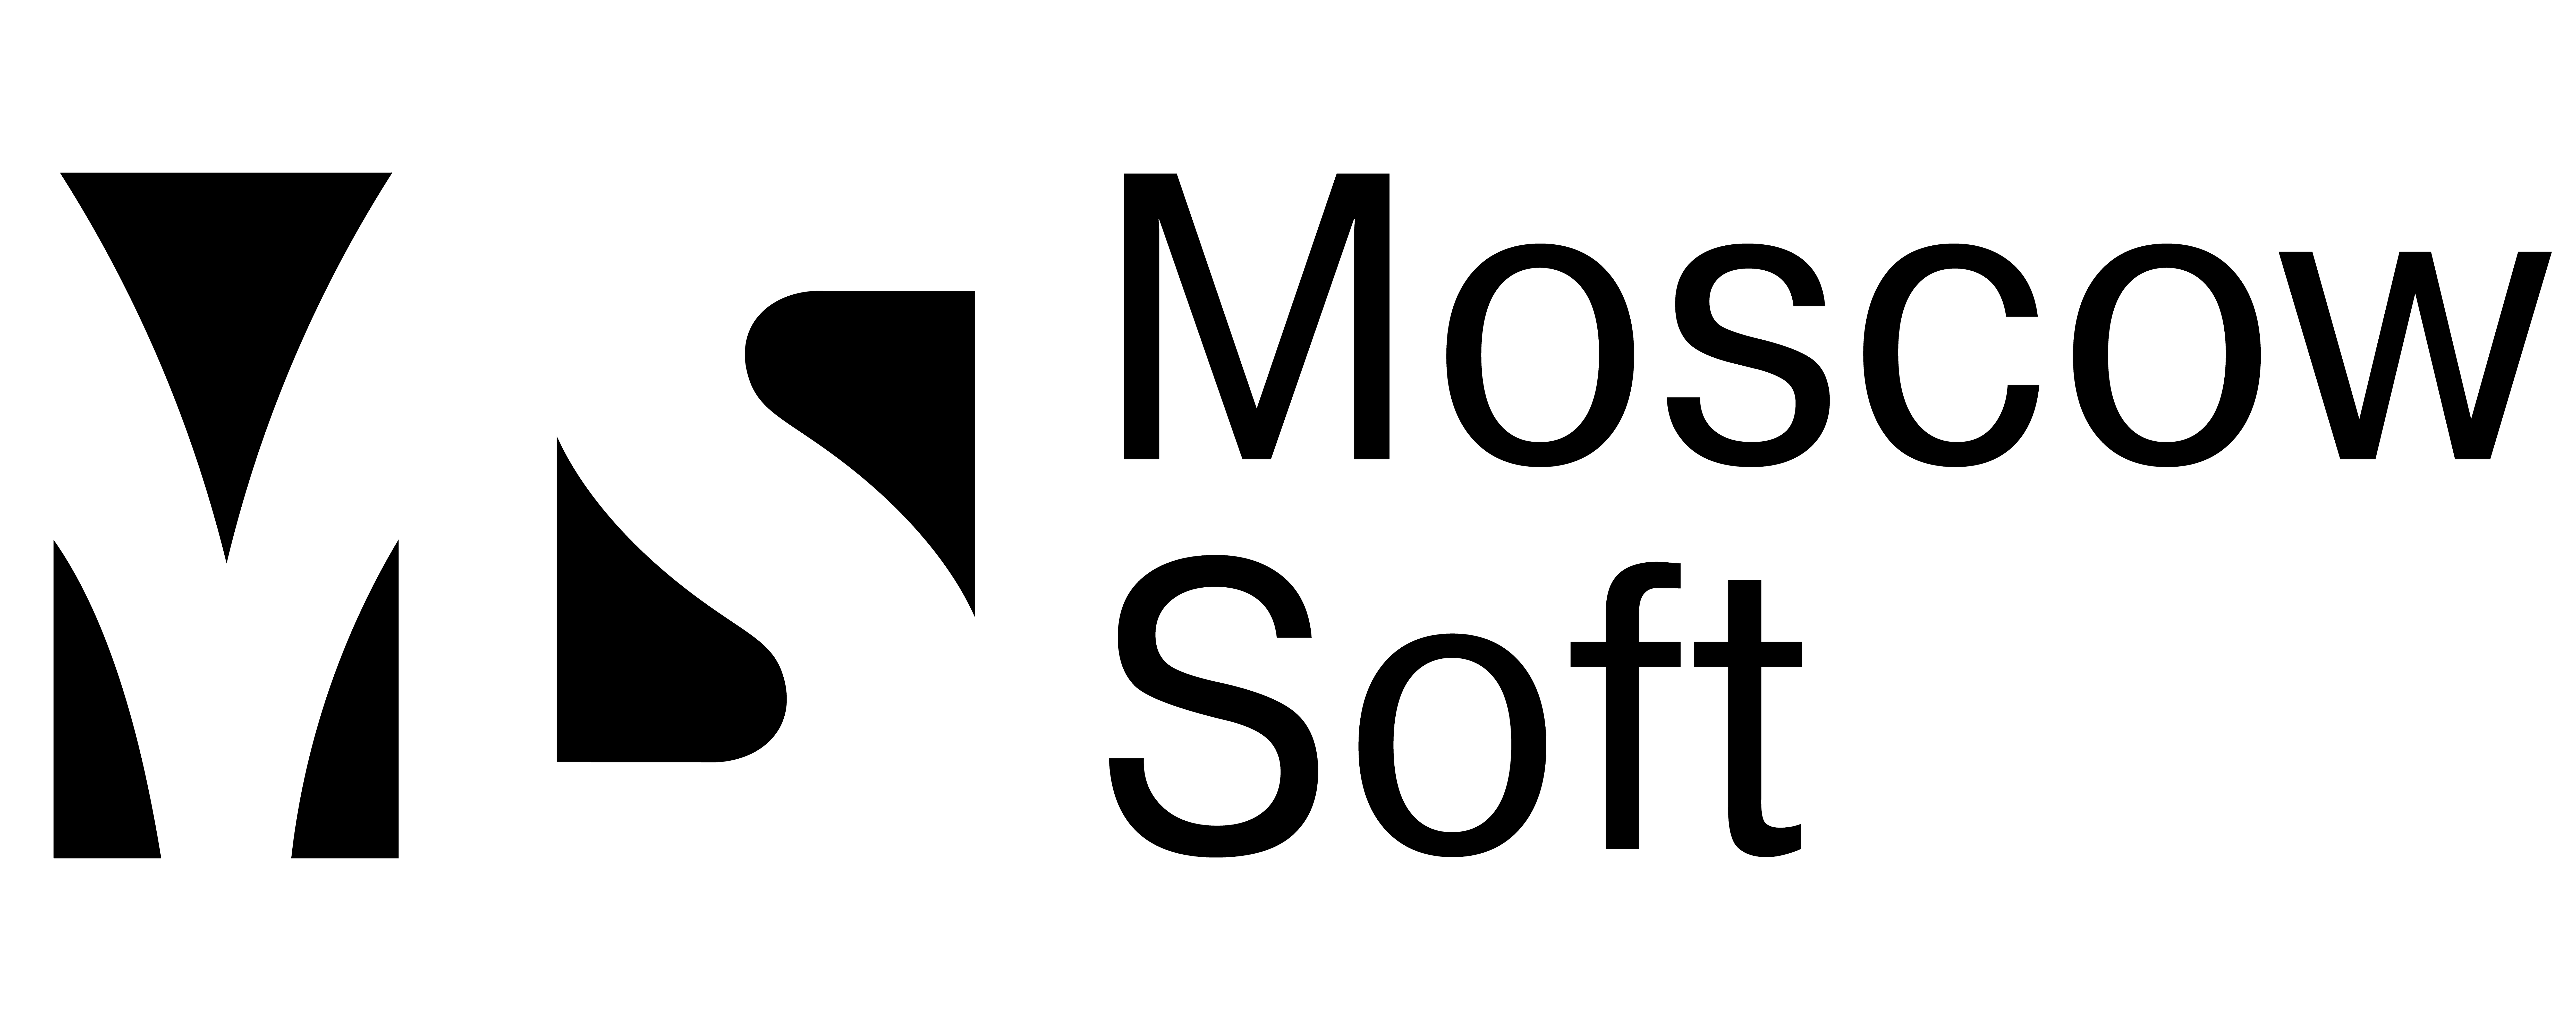 Софт логотип. Логотип российского софта. Деснол софт лого. Bpmsoft логотип. Ооо деловая москва